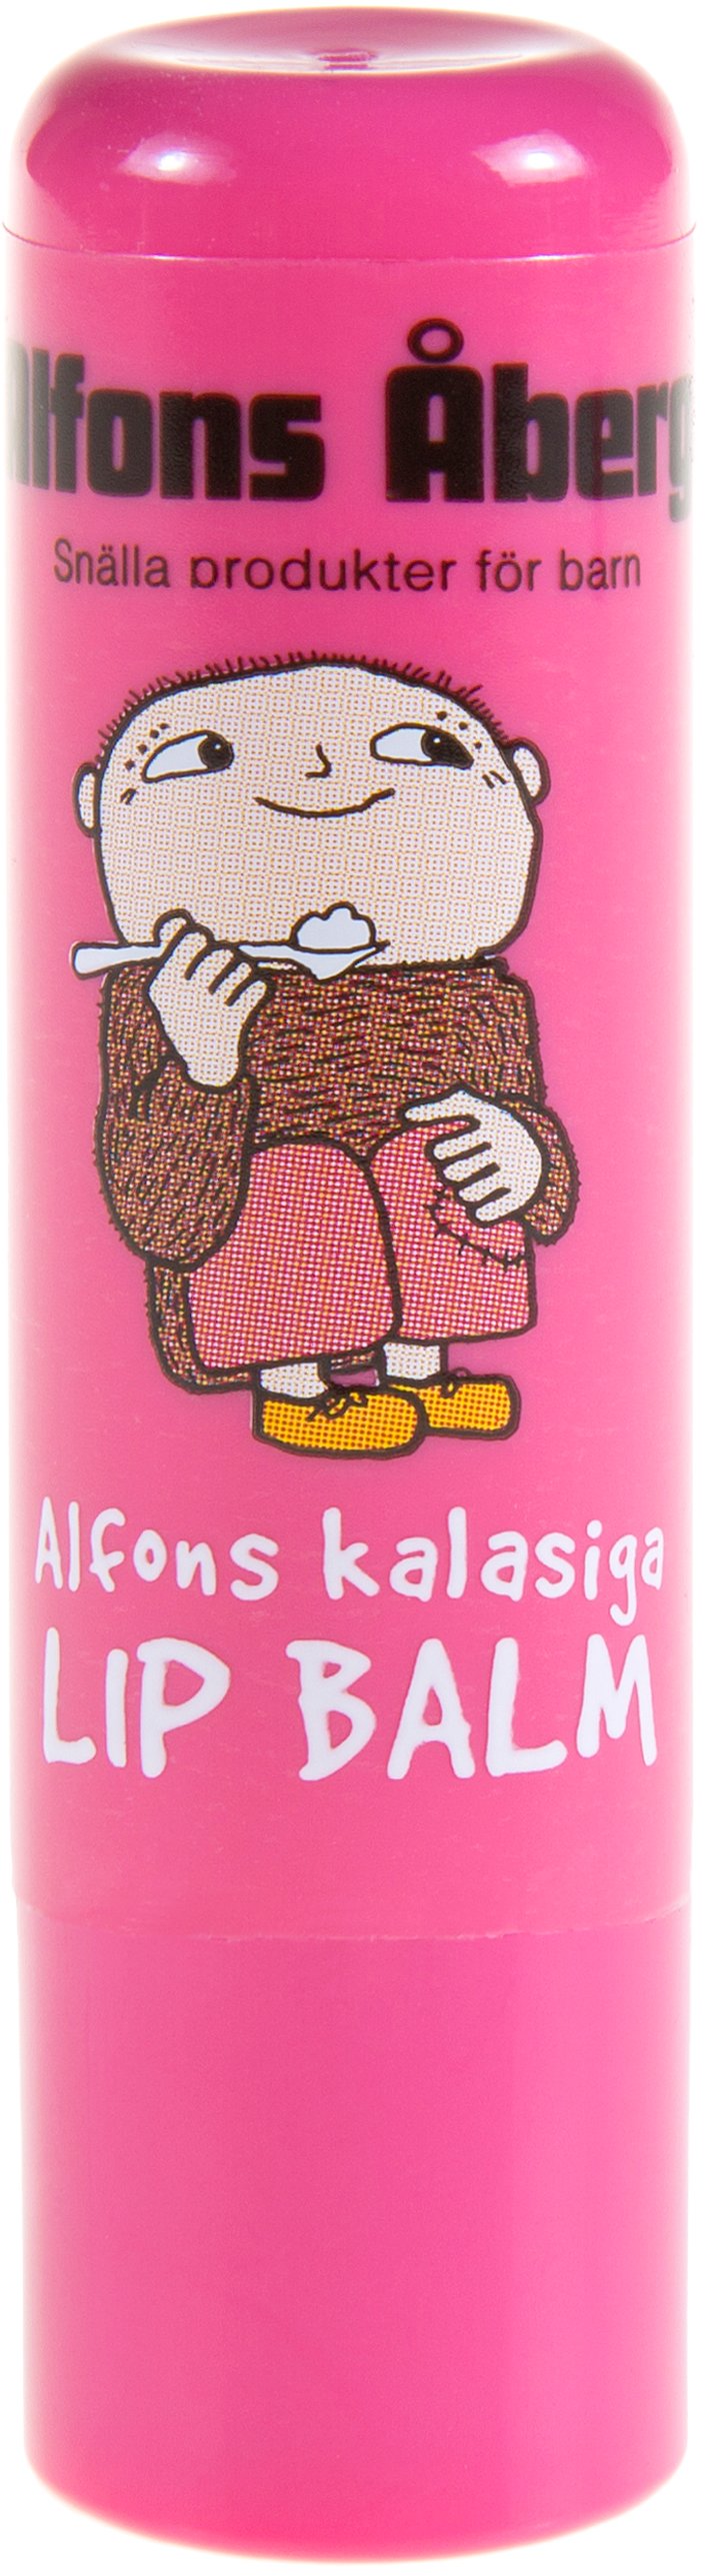 Alfons Åberg Alfons kalasiga lip balm 5 ml